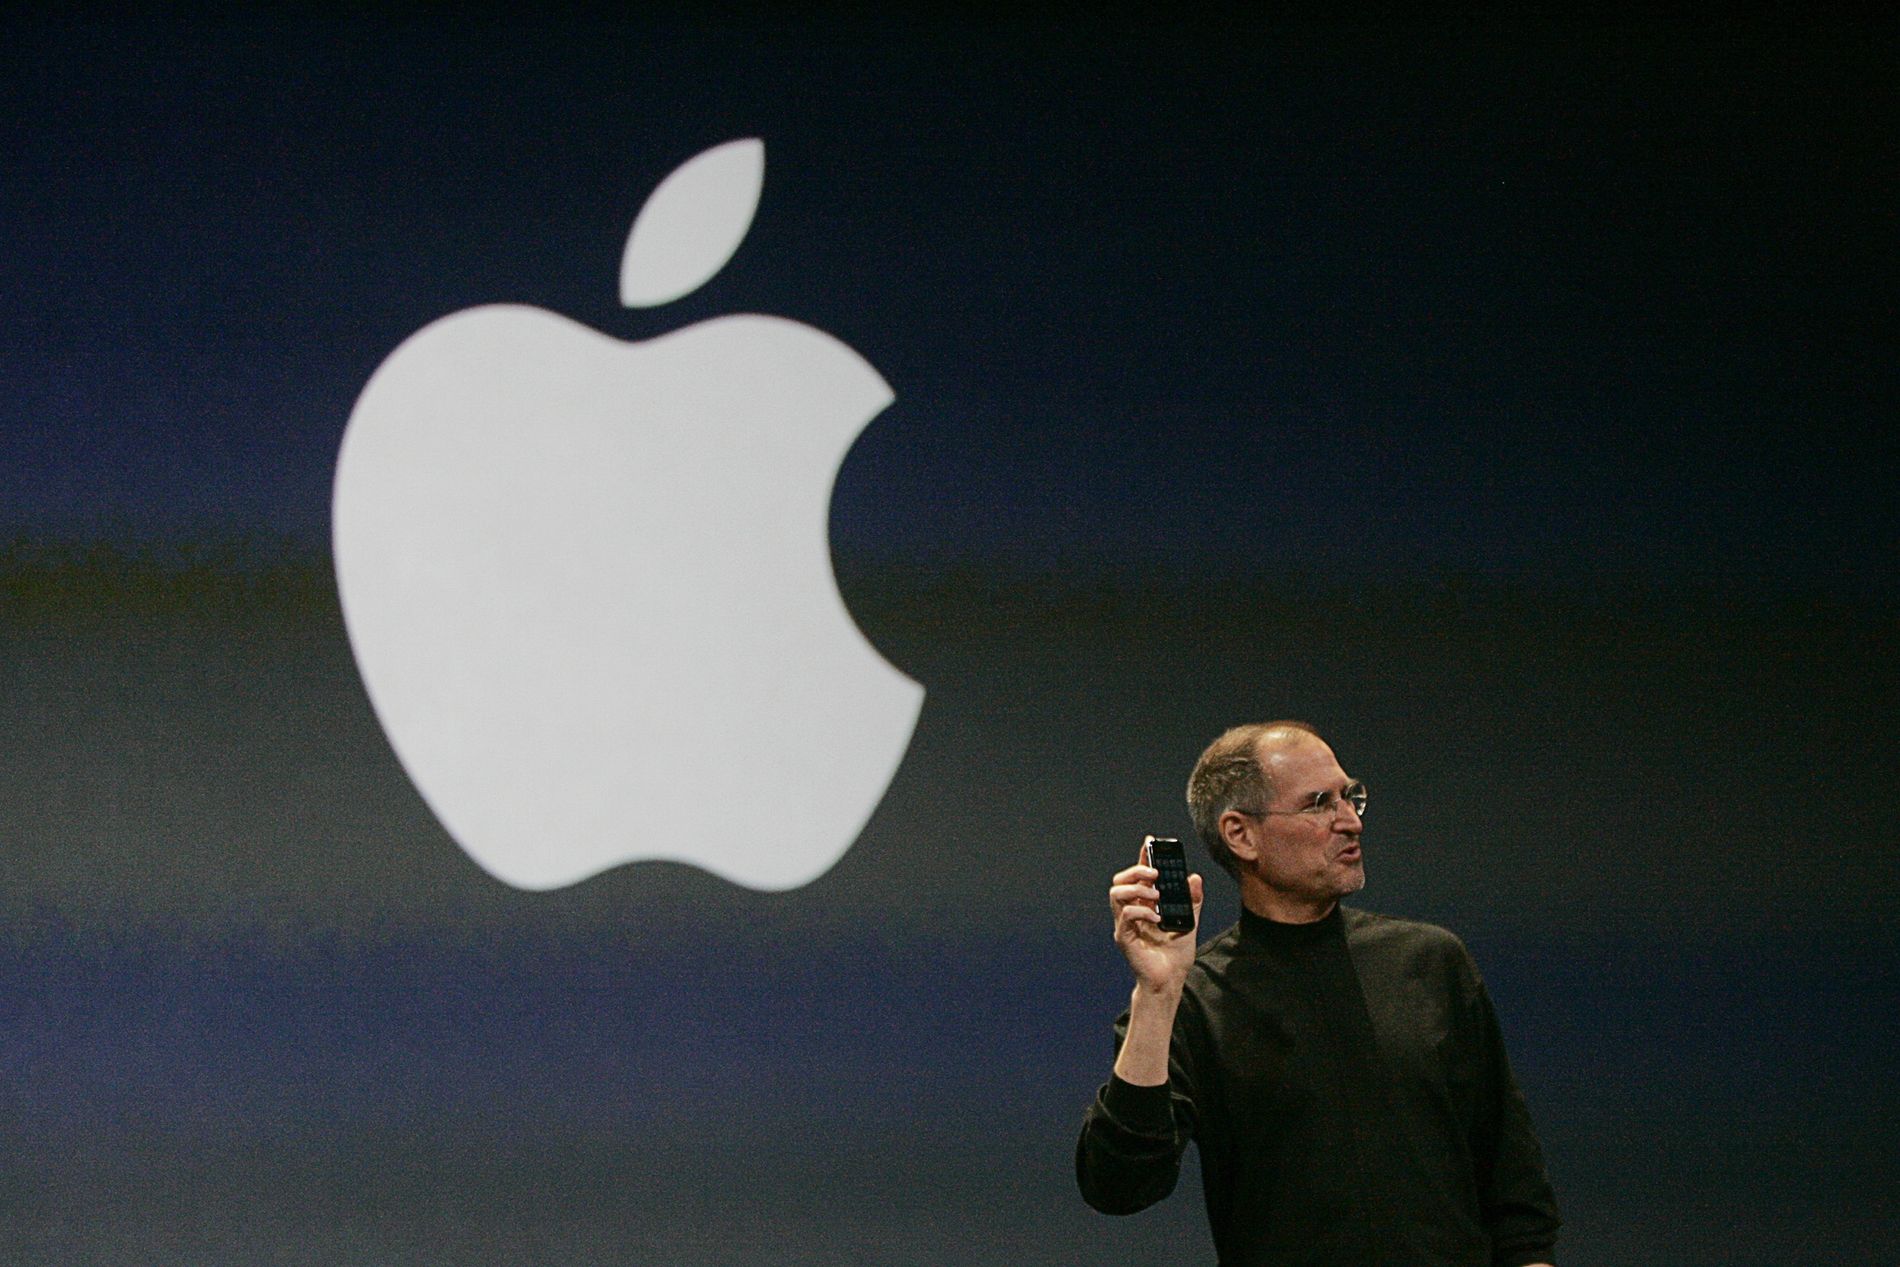 First apple. Стив Джобс 2007. Стив Джобс презентация iphone 2007. Стив Джобс презентация первого Apple iphone. Стив Джобс с айфоном.